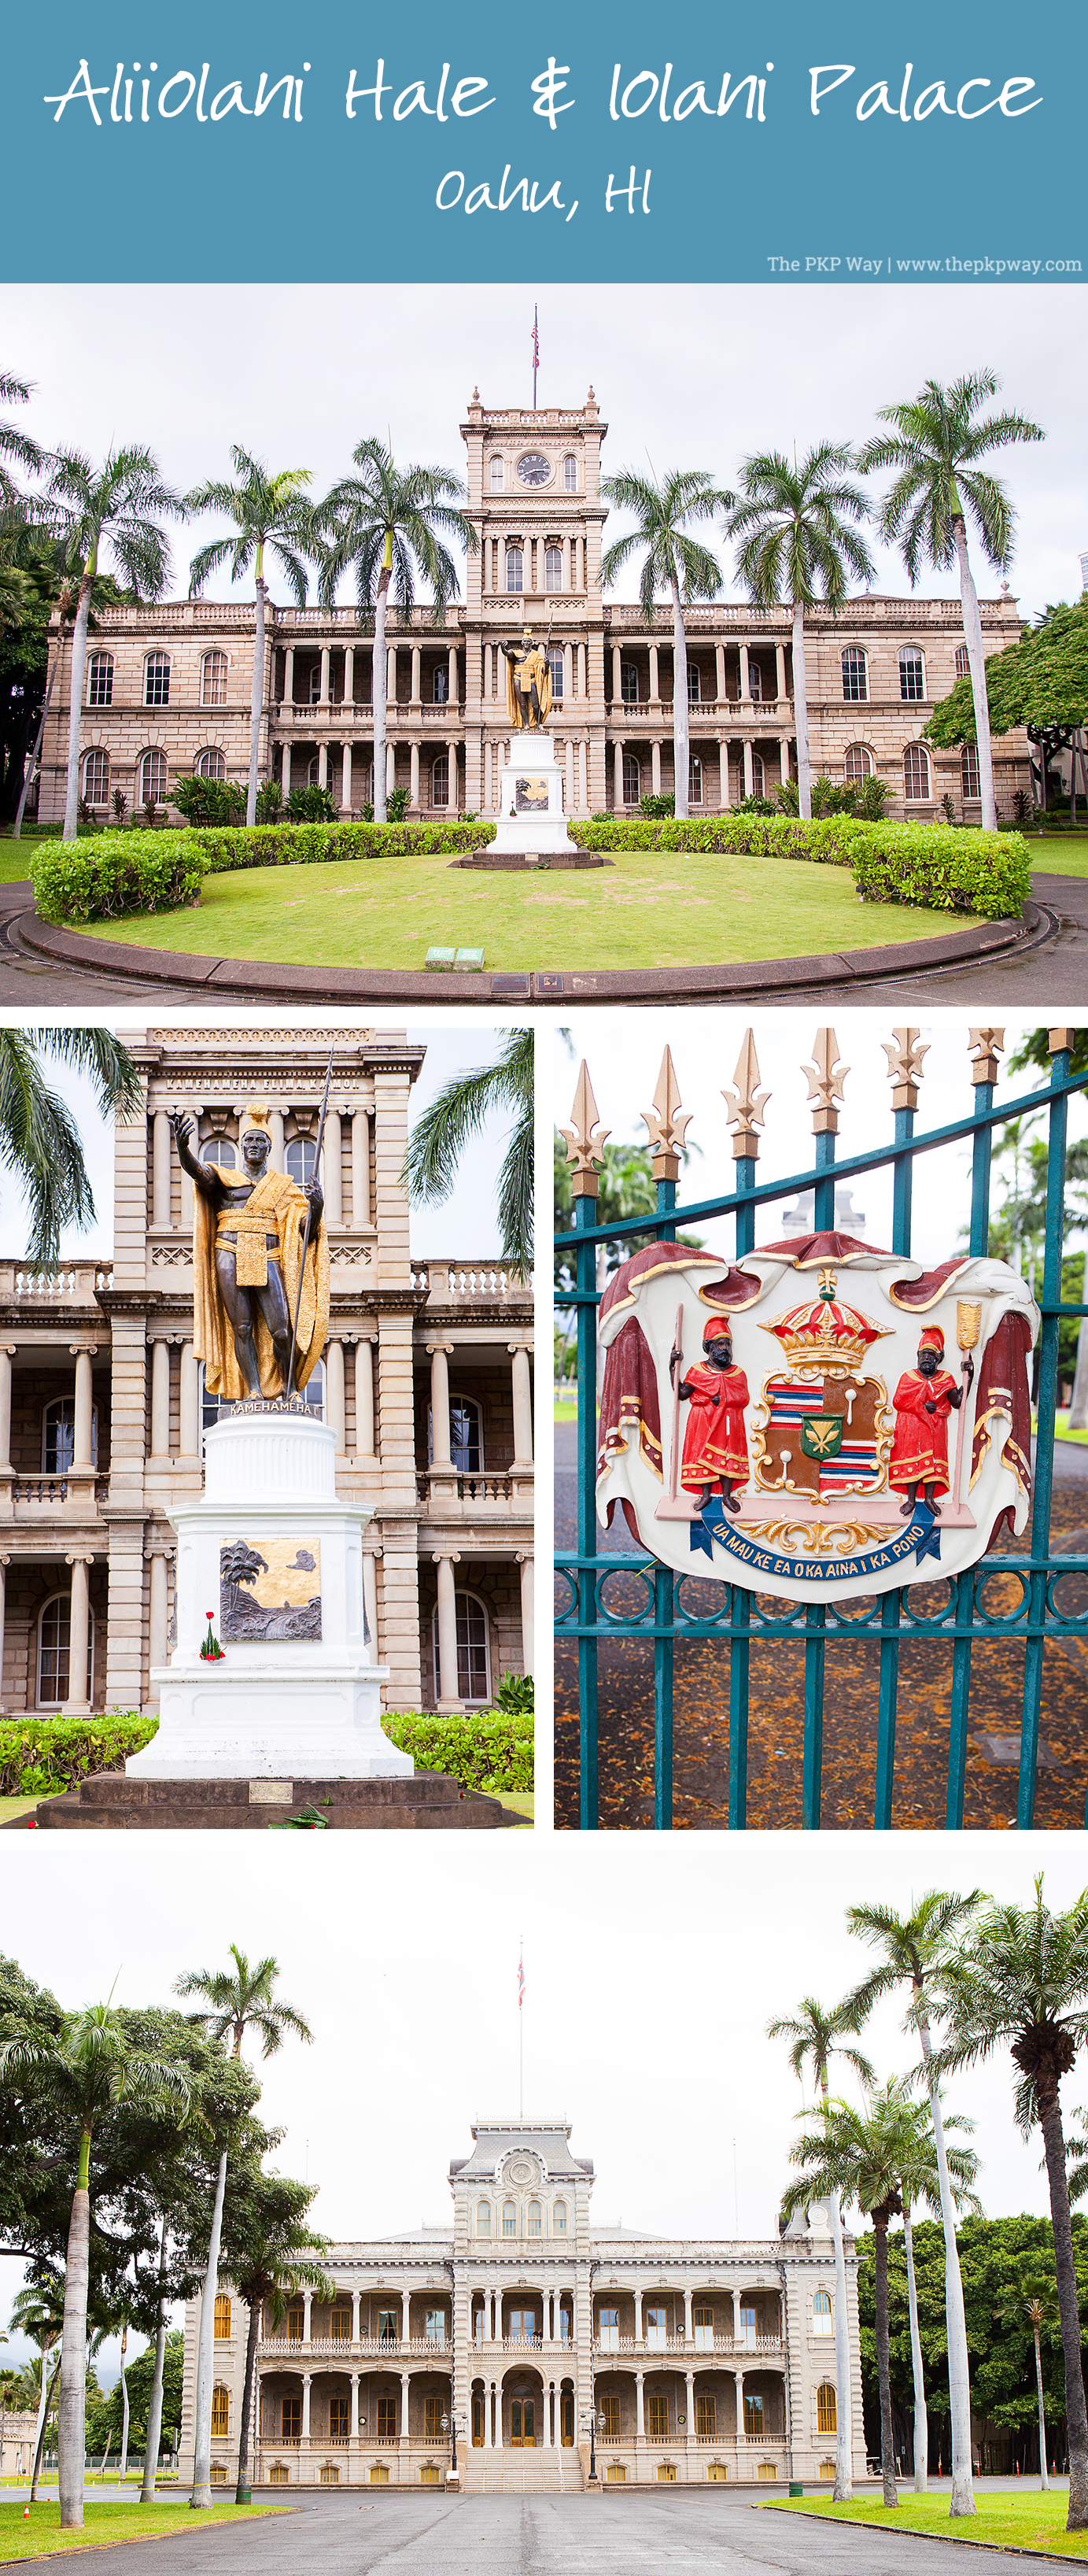 Oahu, Hawaii, Aliiolani Hale, Iolani Palace, King Kamehameha